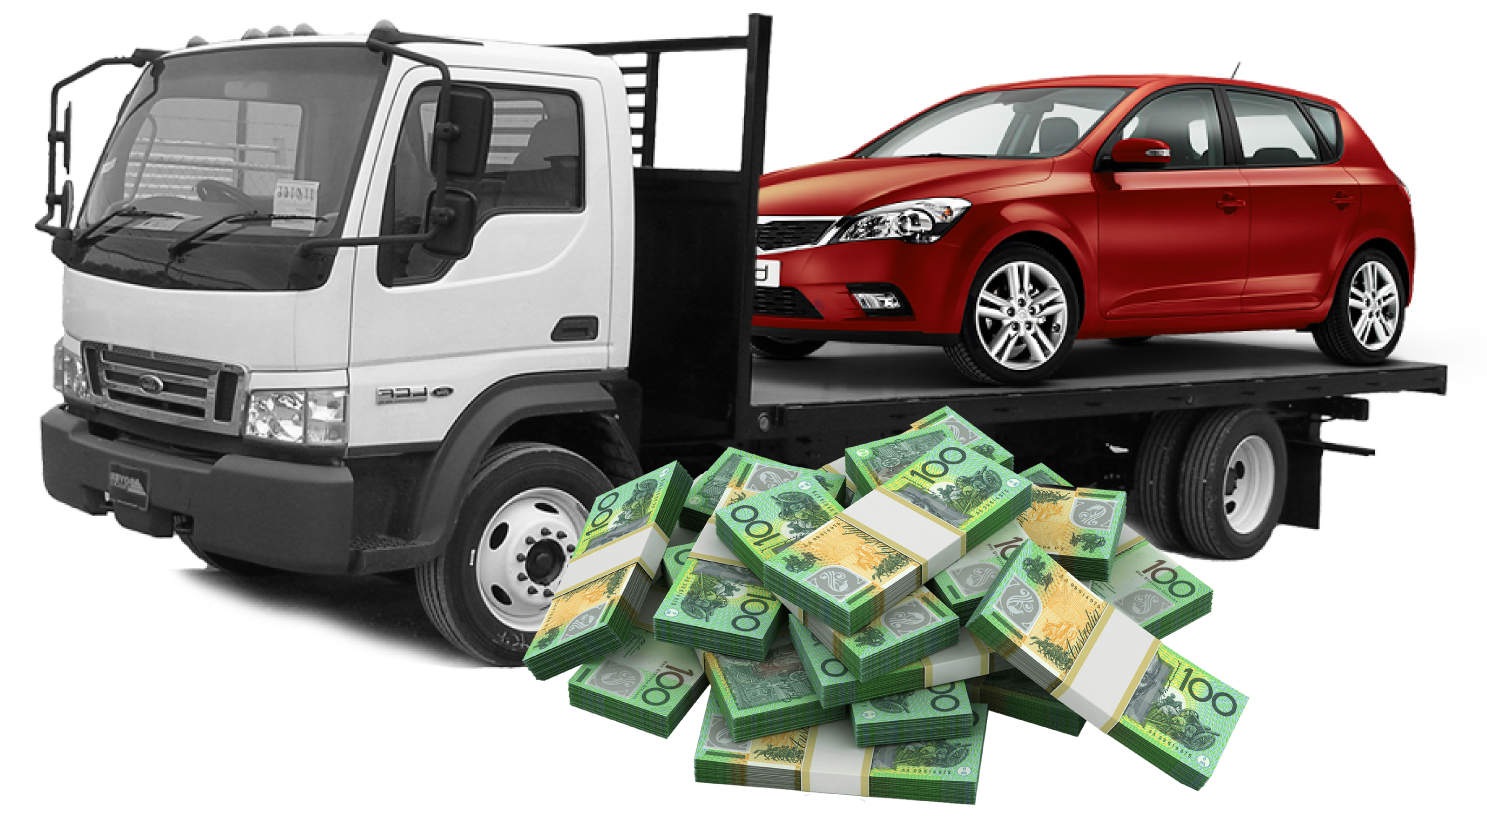 Cash for scrap car keperra